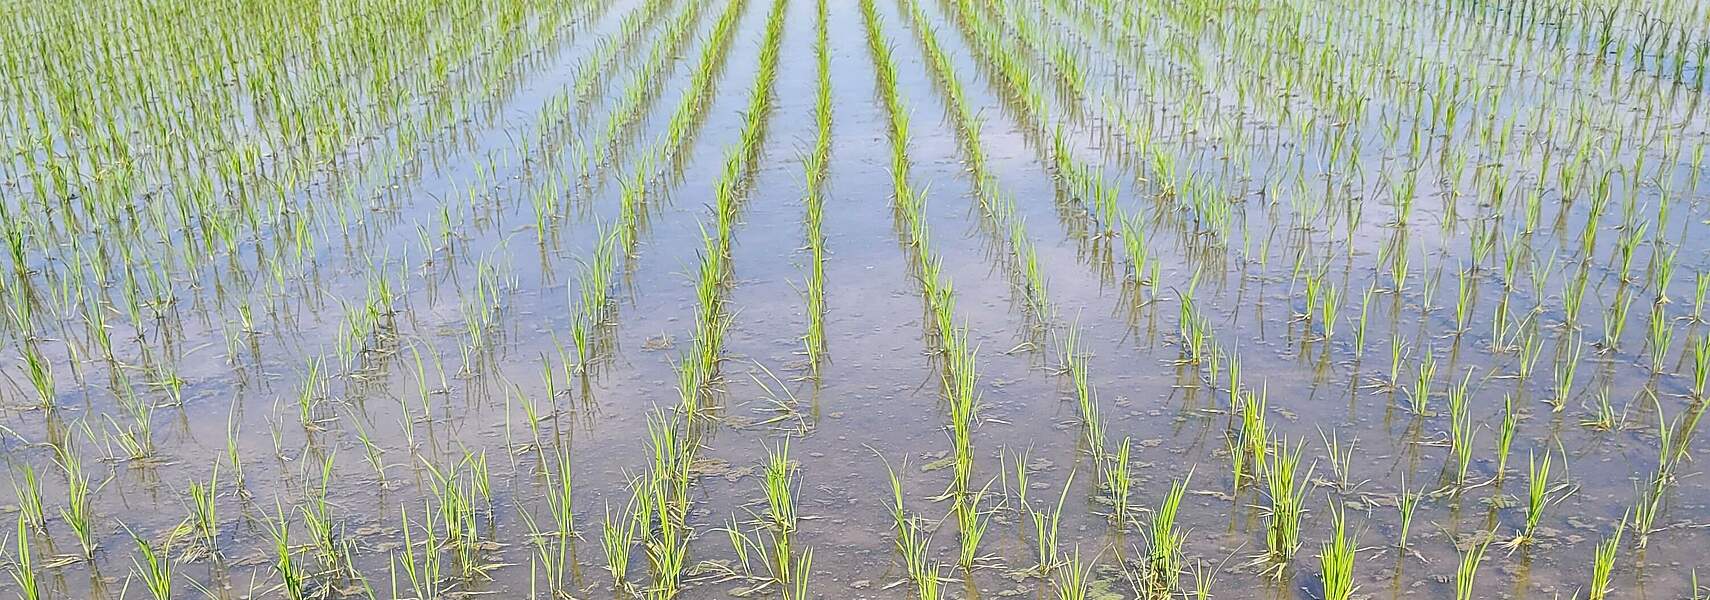 Von Reisfeldern bis zur Landschaftspflege